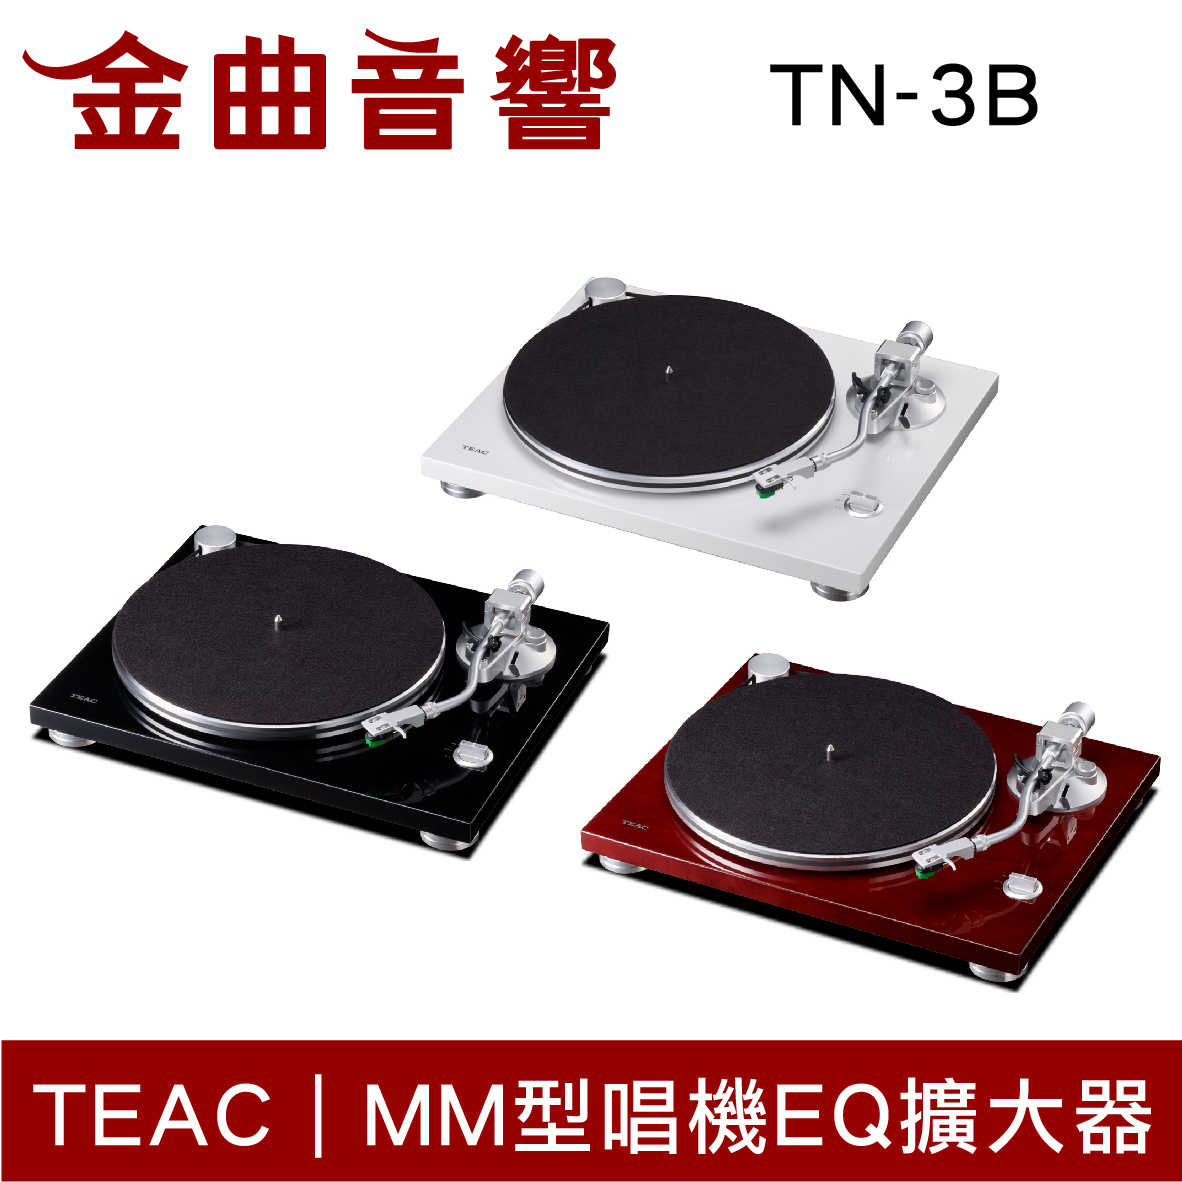 TEAC TN-3B USB 數位輸出 黑膠唱盤 | 金曲音響